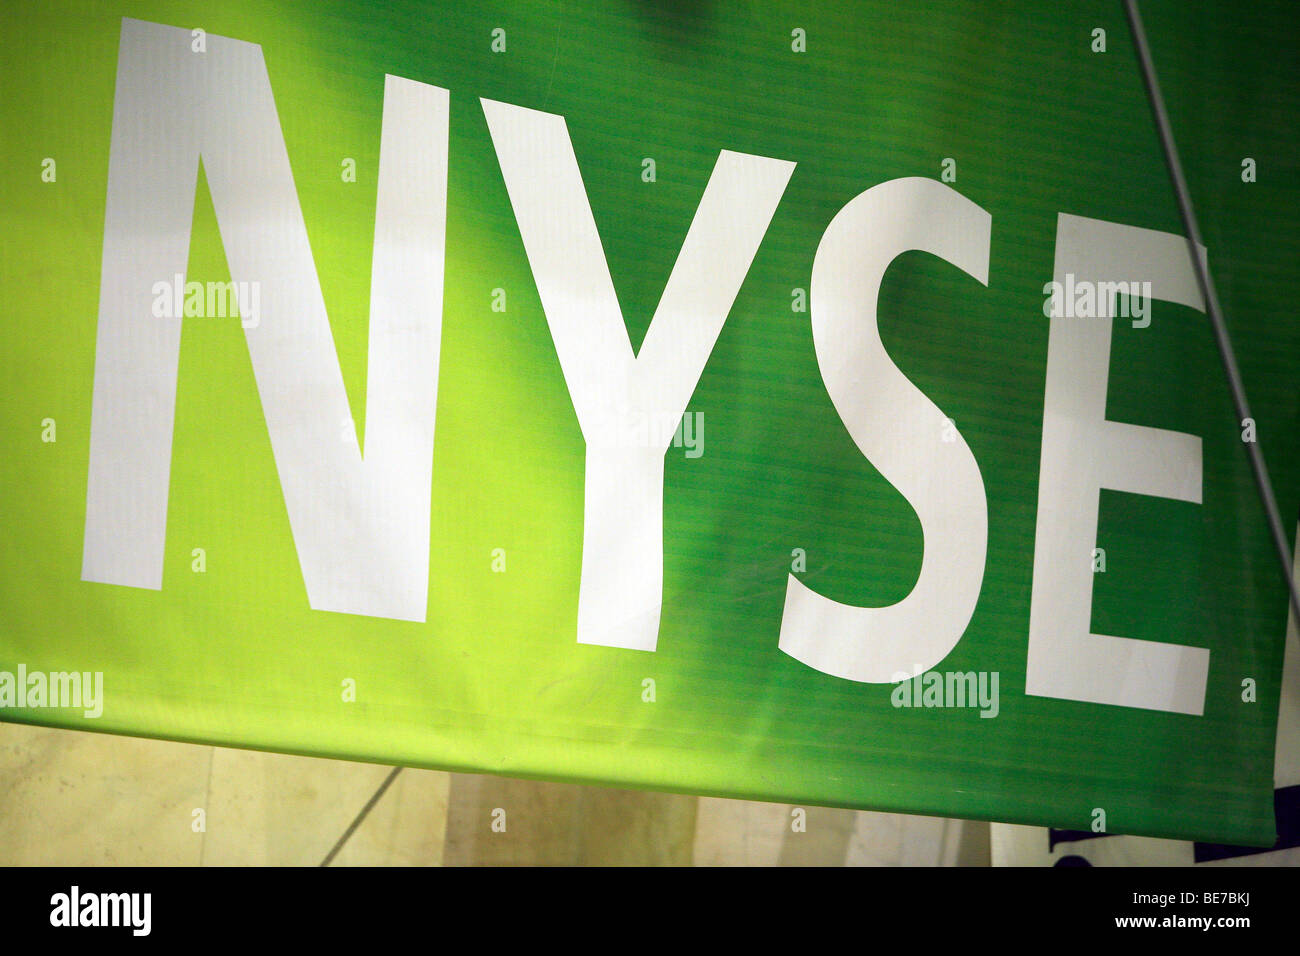 New York Stock Exchange Euronext logo displayed in the New York Stock exchange place in New york downtown Stock Photo